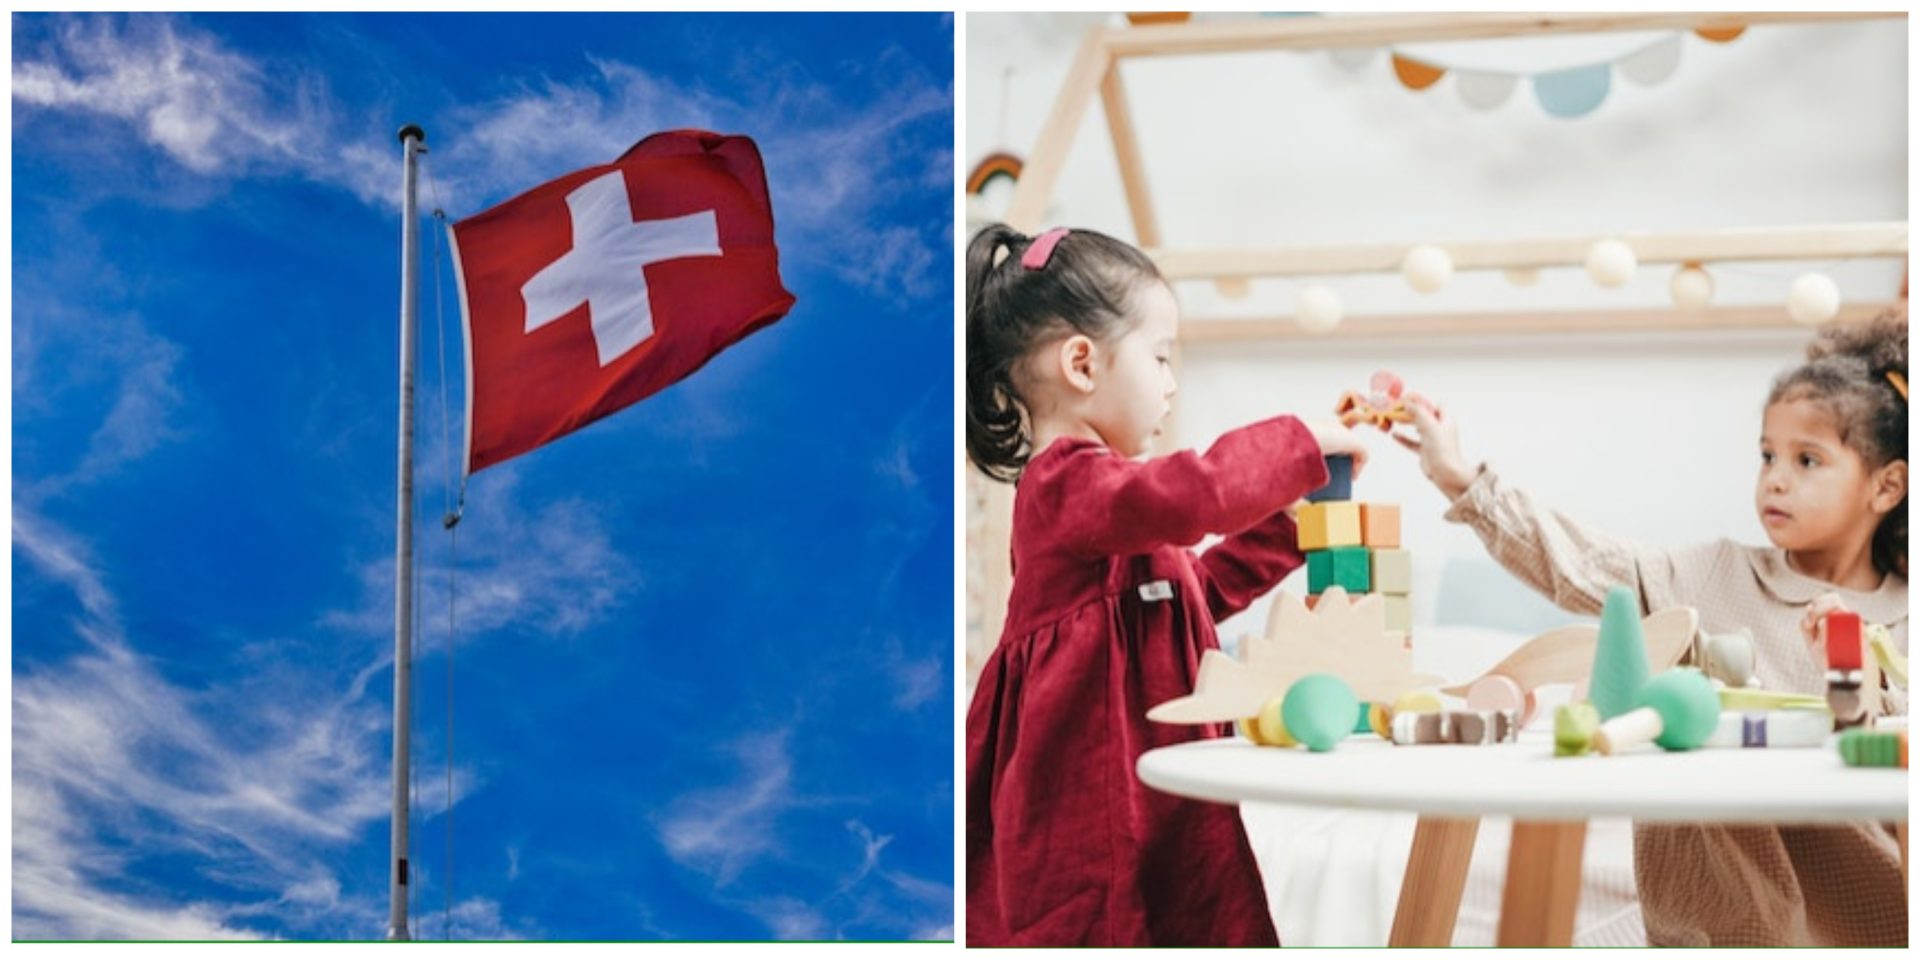 Zürich nameće roditeljima da se odreknu termina ‘majka’ i ‘otac’ jer ti termini nisu rodno neutralni